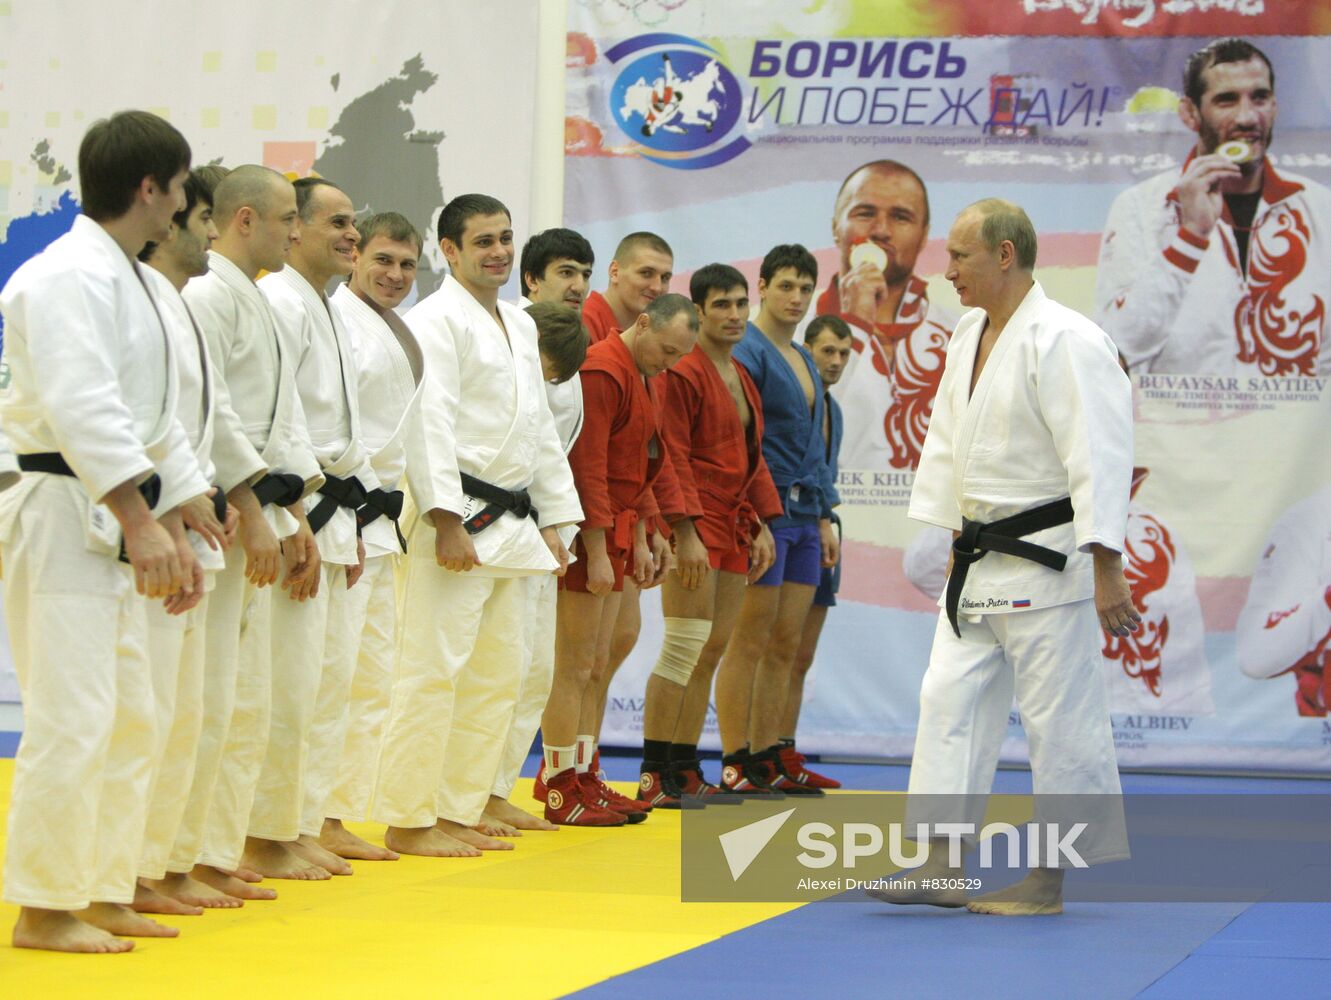 Vladimir Putin attends judo training session | Sputnik Mediabank